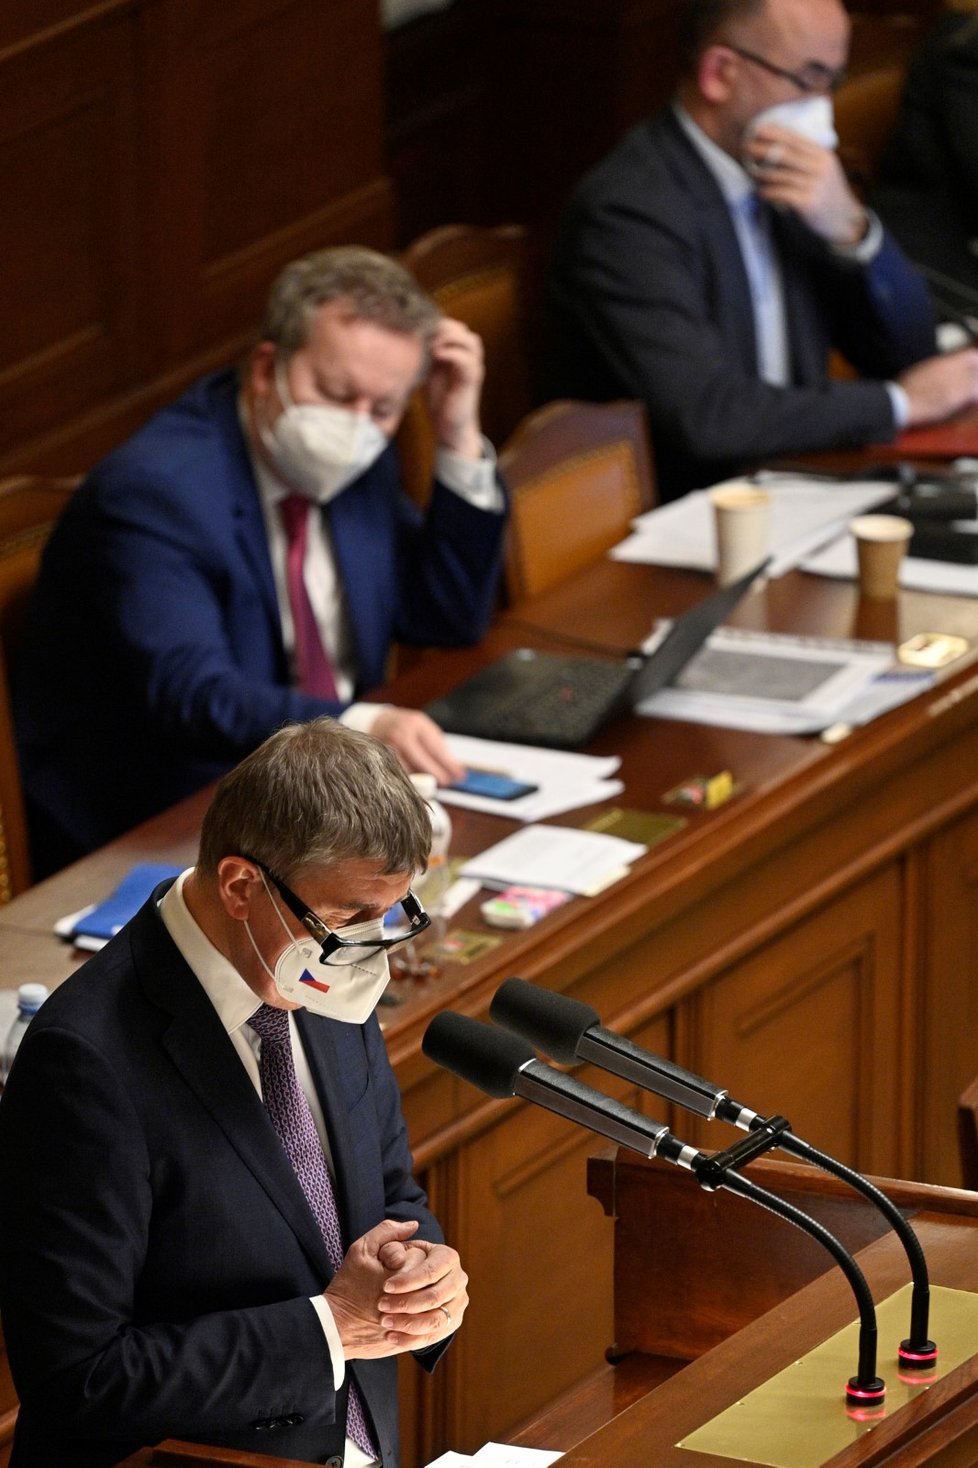 Premiér Andrej Babiš opět žádá Sněmovnu o prodloužení nouzového stavu. Poslanci ale chtějí, aby vláda vyhlásila nouzový stav zcela nový. (26. 2. 2021)